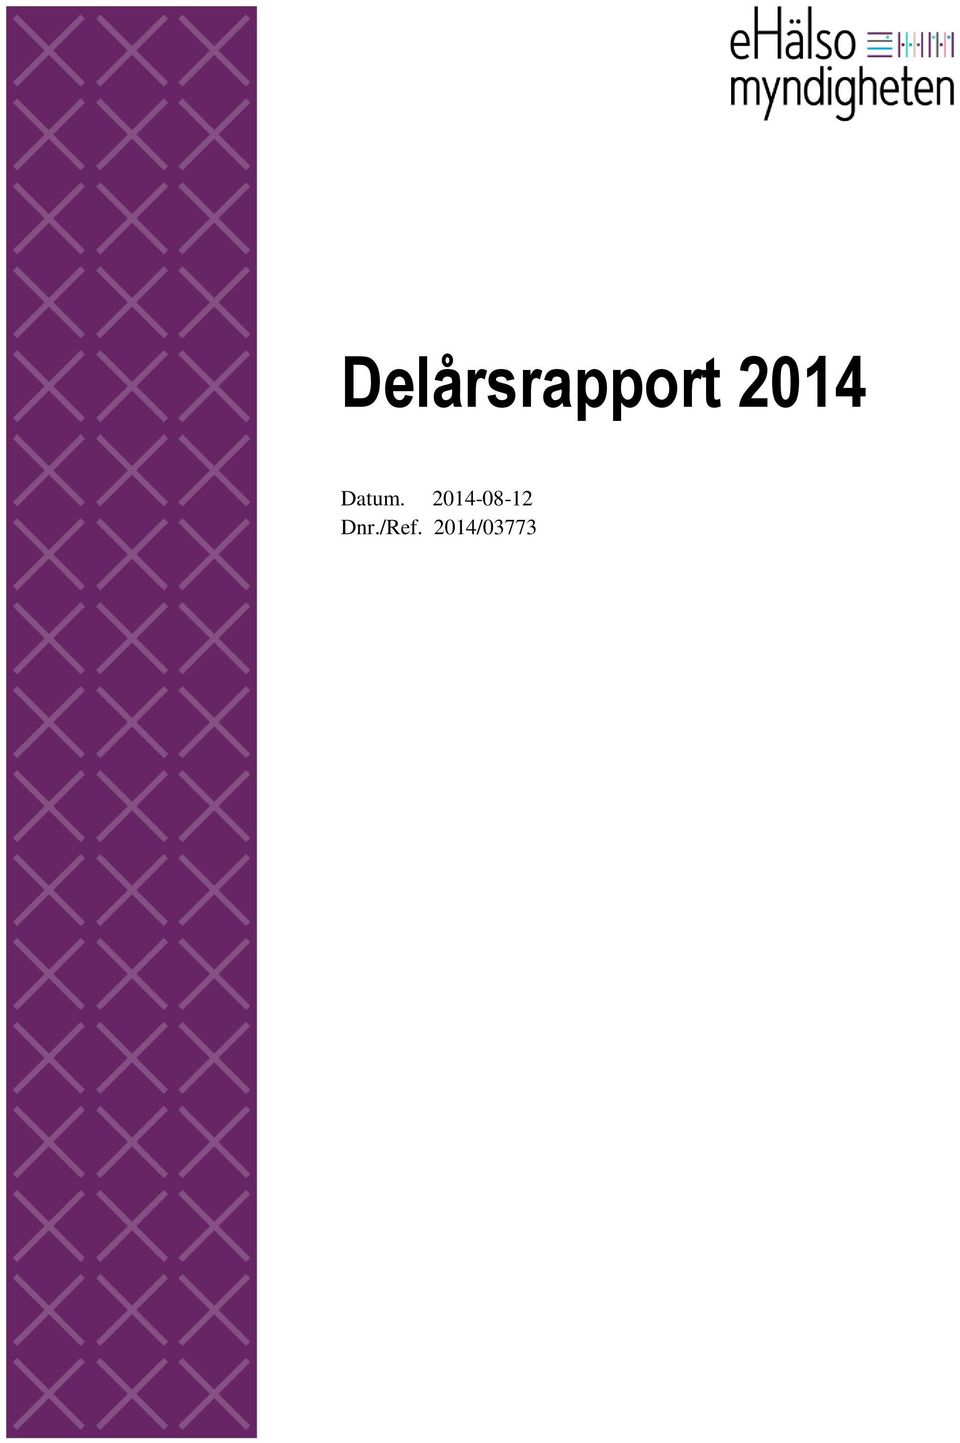 2014/03773 Delårsrapport